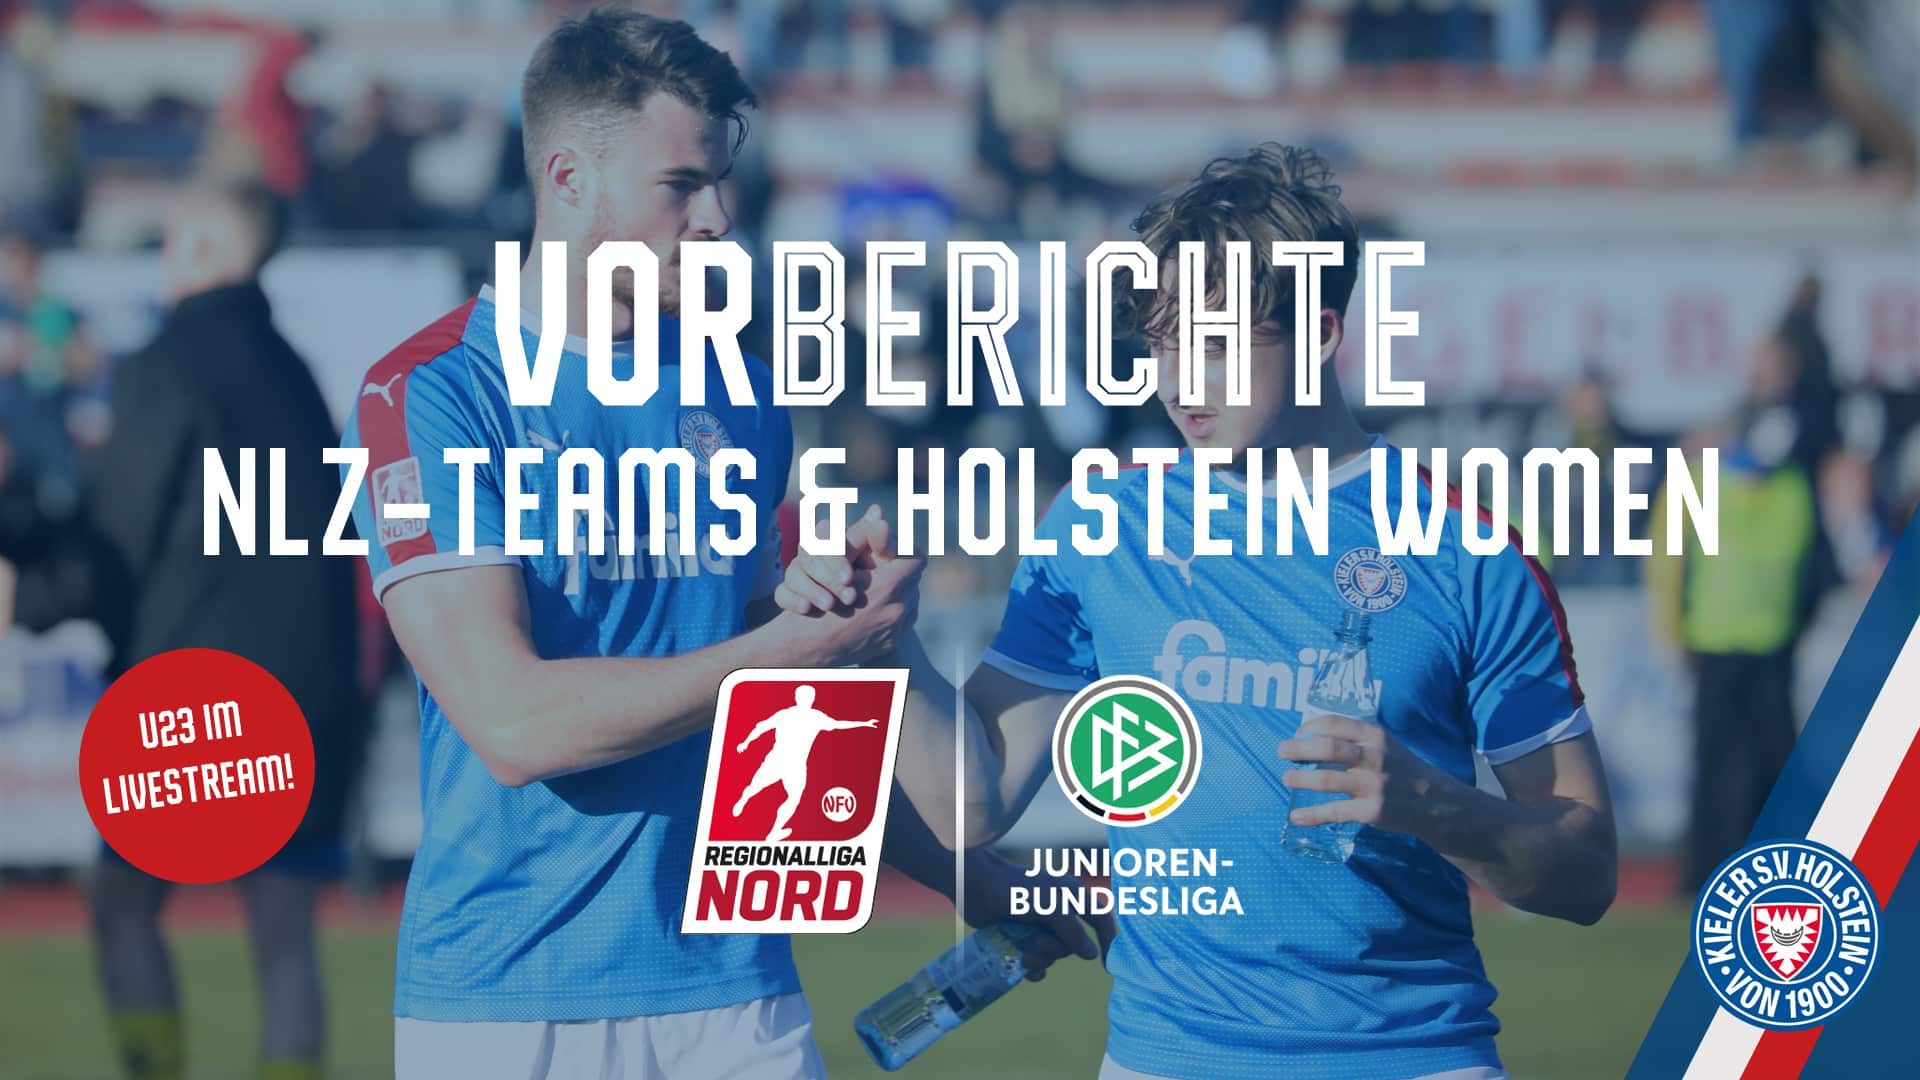 20220408 Vorbericht U23 - Oldenburg U19 - Rostock U17 - St. Pauli Women - Werder II mit Stoerer